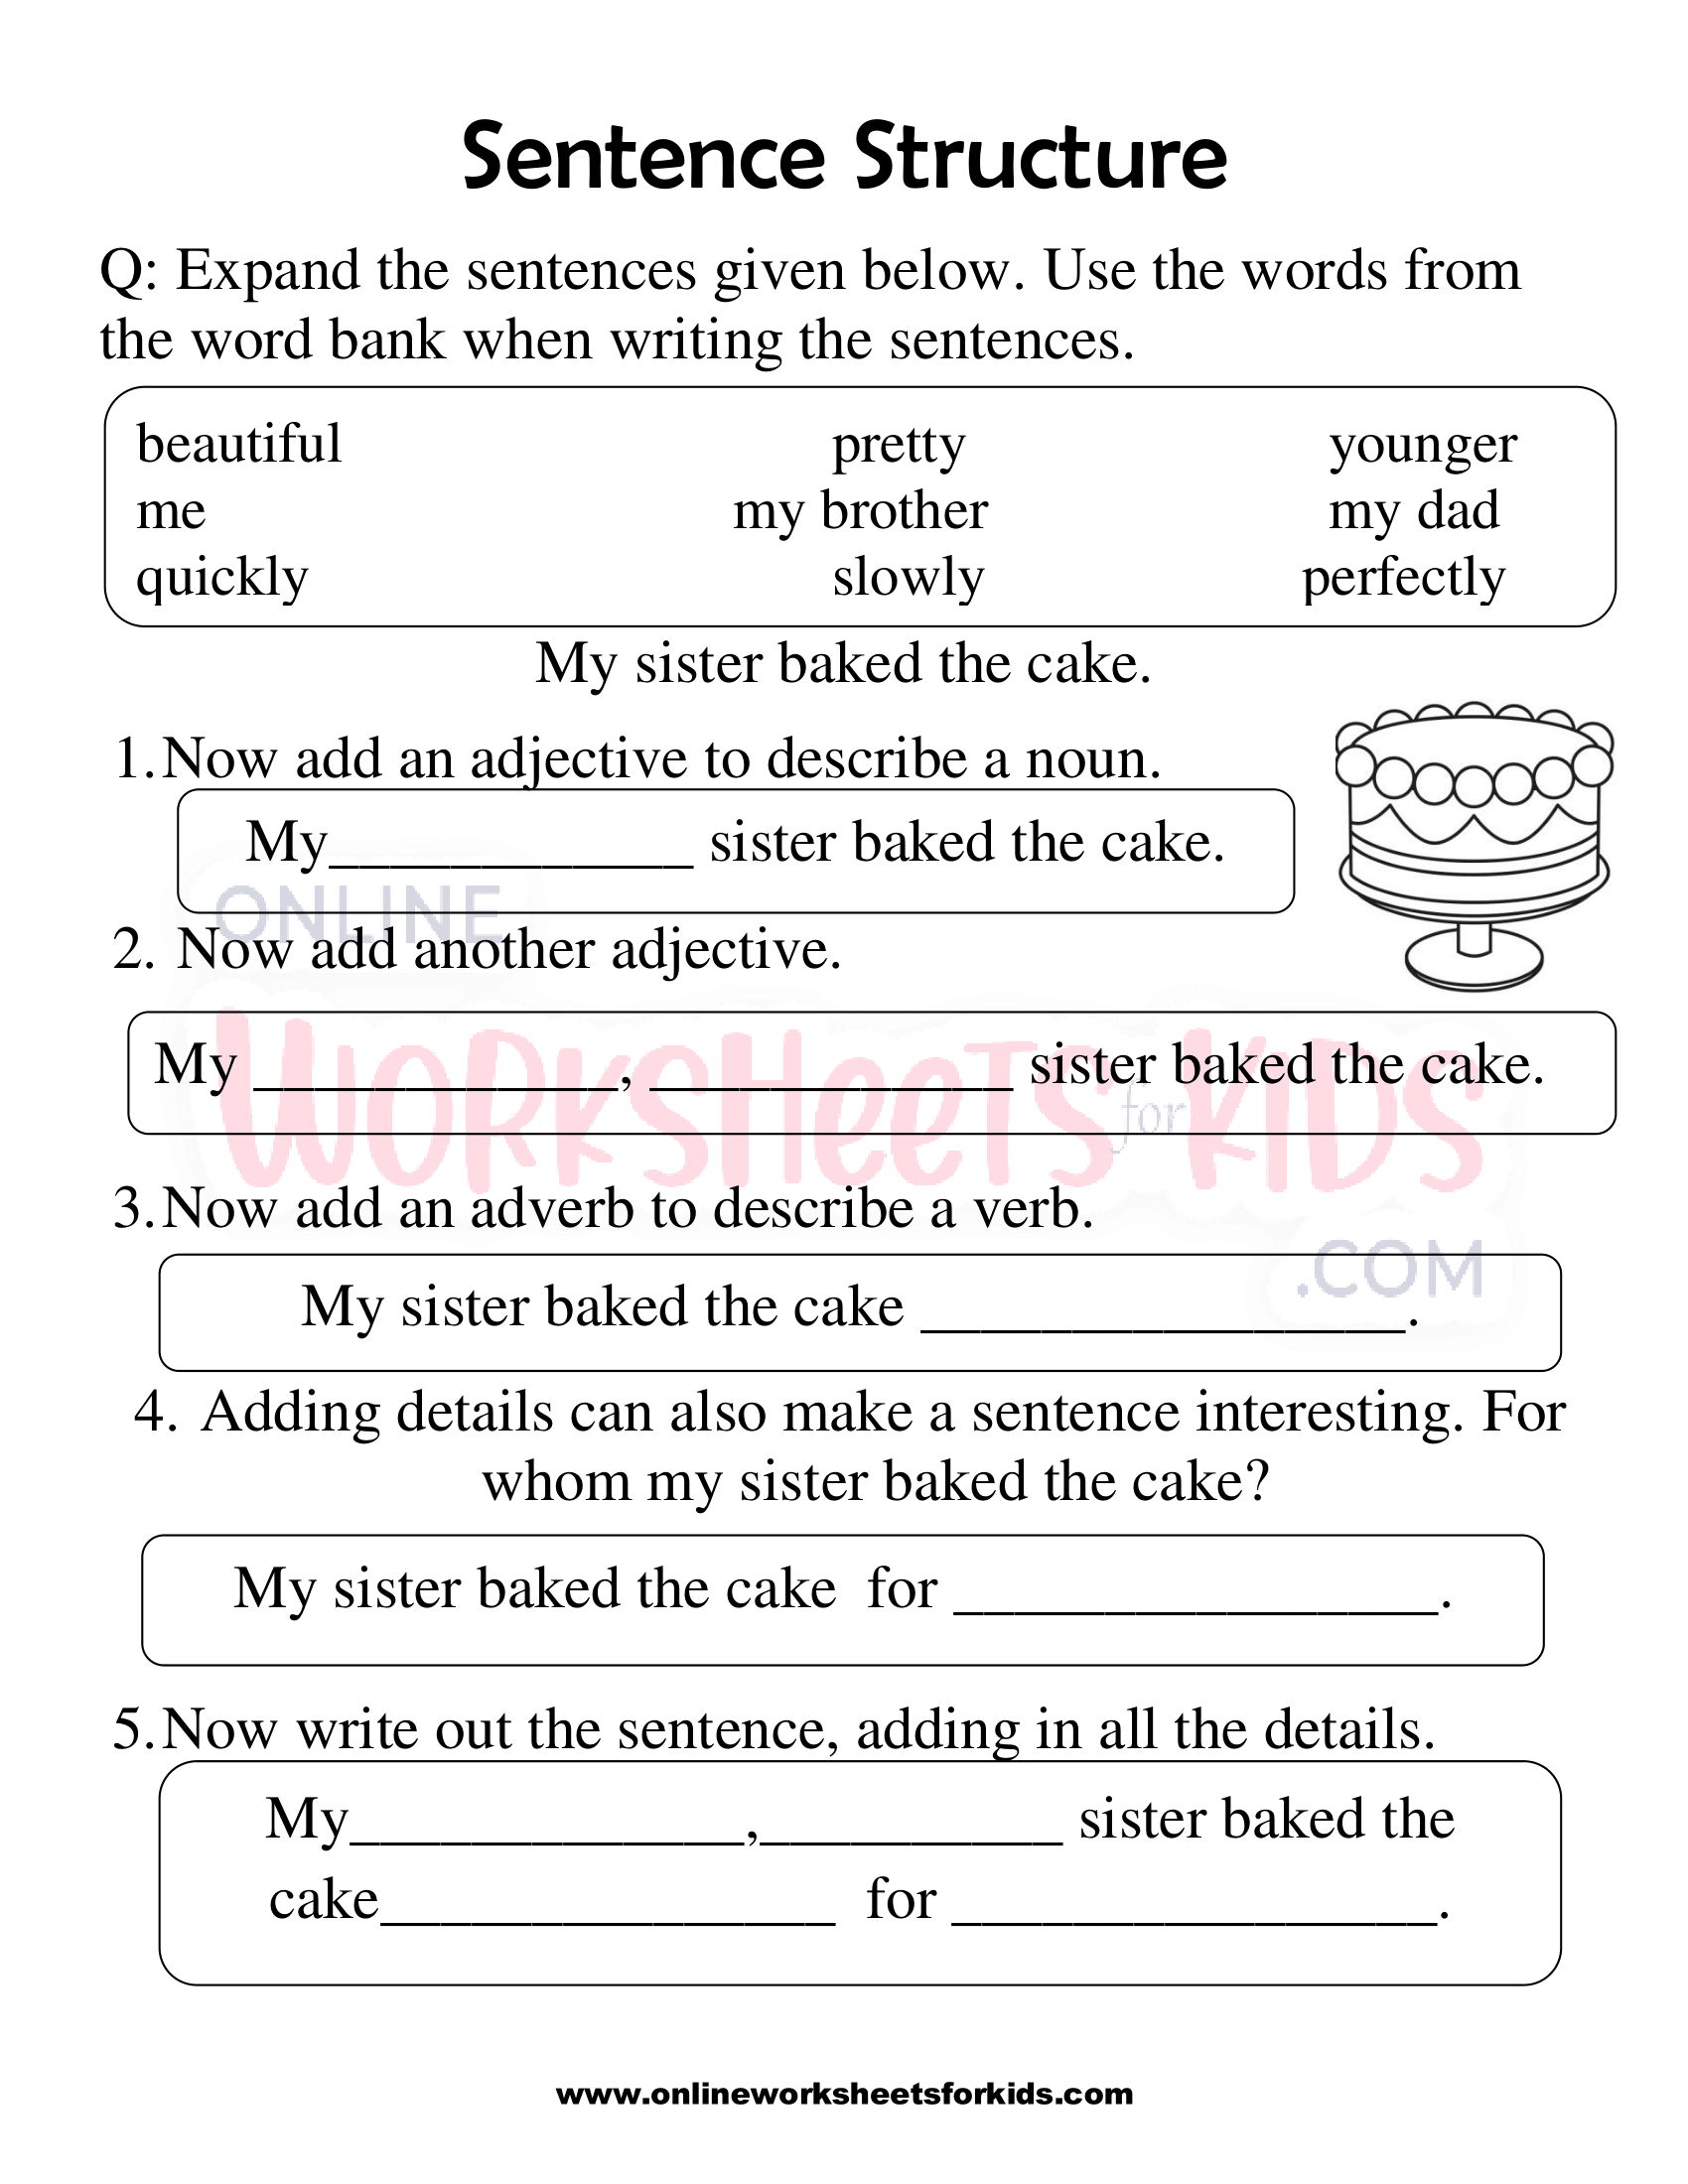 sentence-structure-worksheets-1st-grade-4